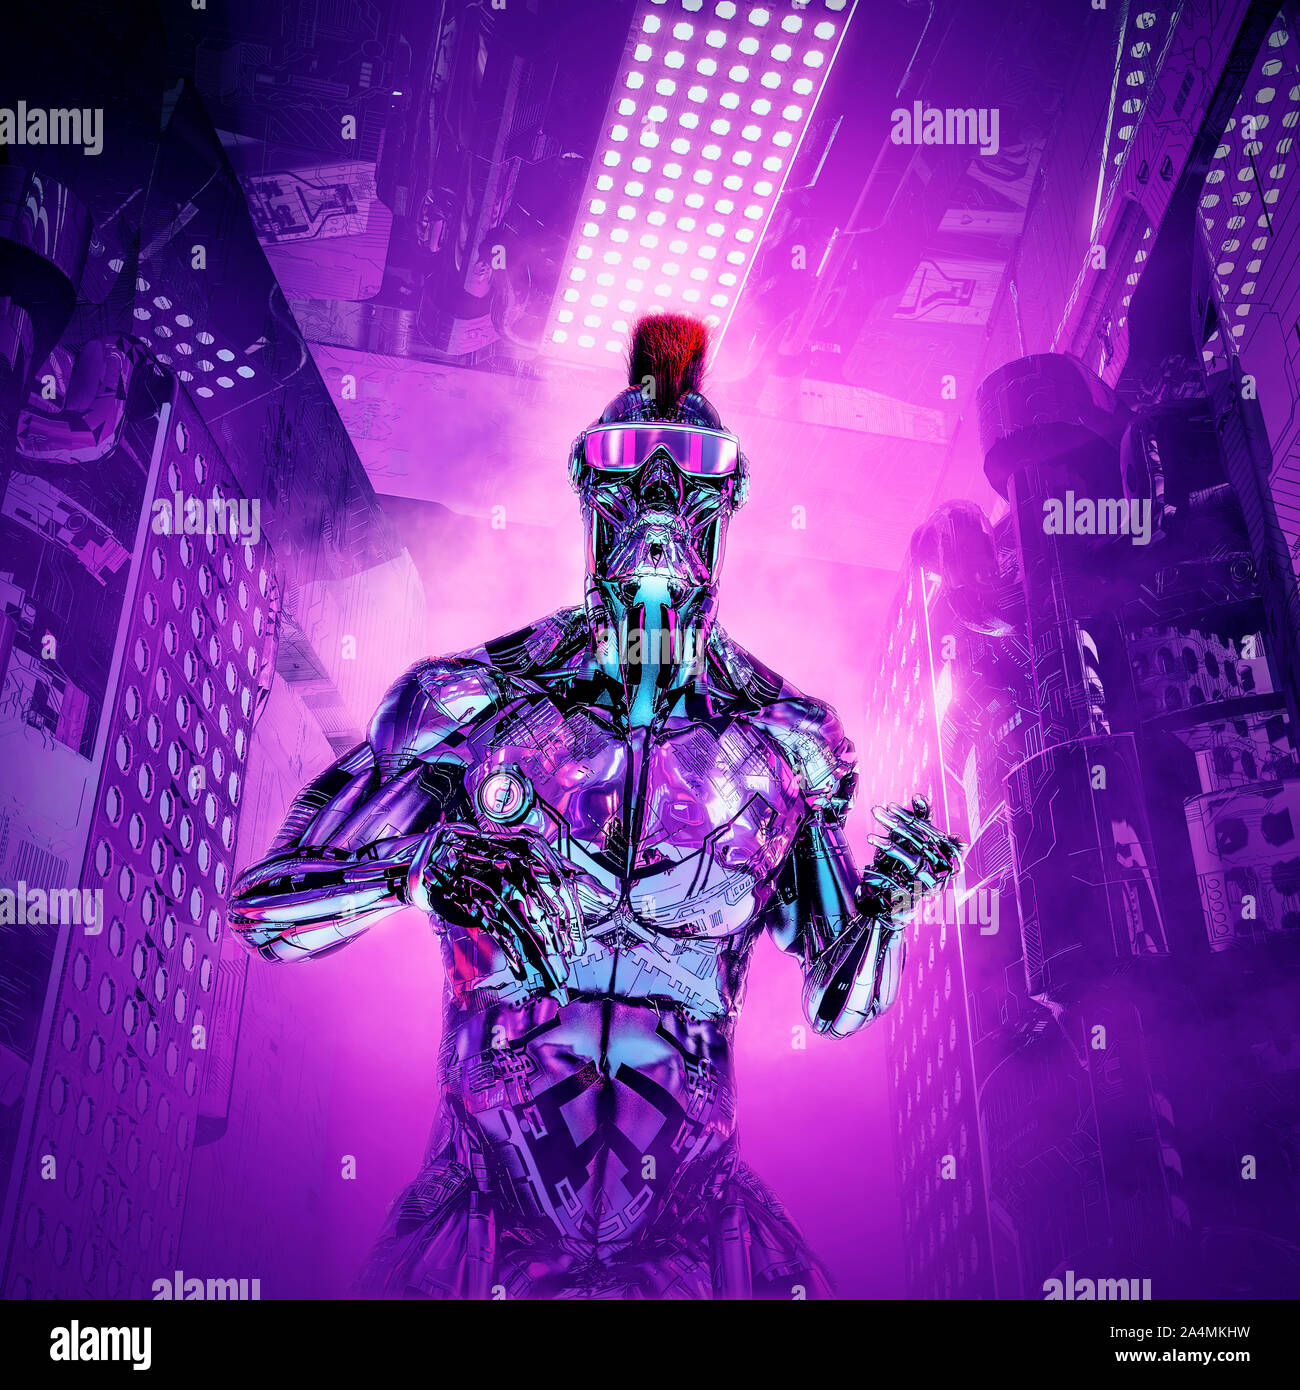 Le garçon artificiel renvoie / 3D illustration de la science-fiction métallique futuriste cyborg humanoïde mâle avec le mohawk hairstyle et lunettes Banque D'Images